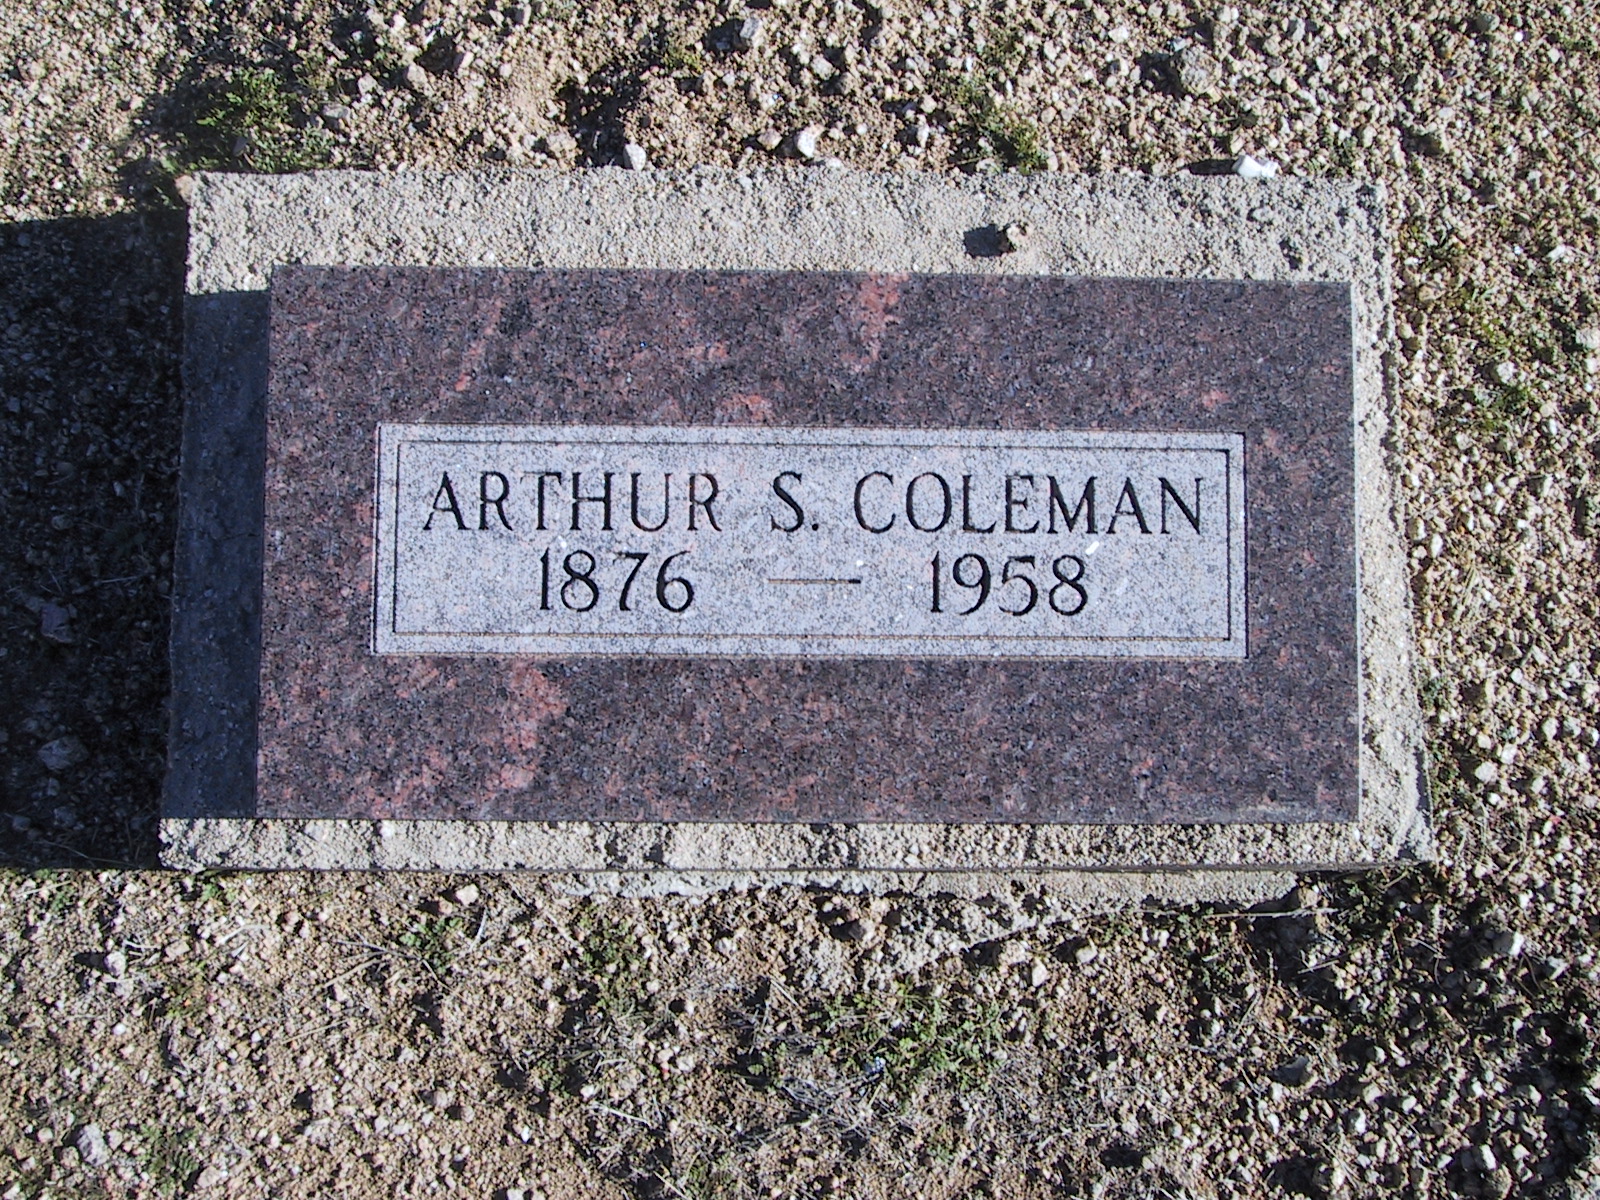 Arthur S. Coleman 1976-1958